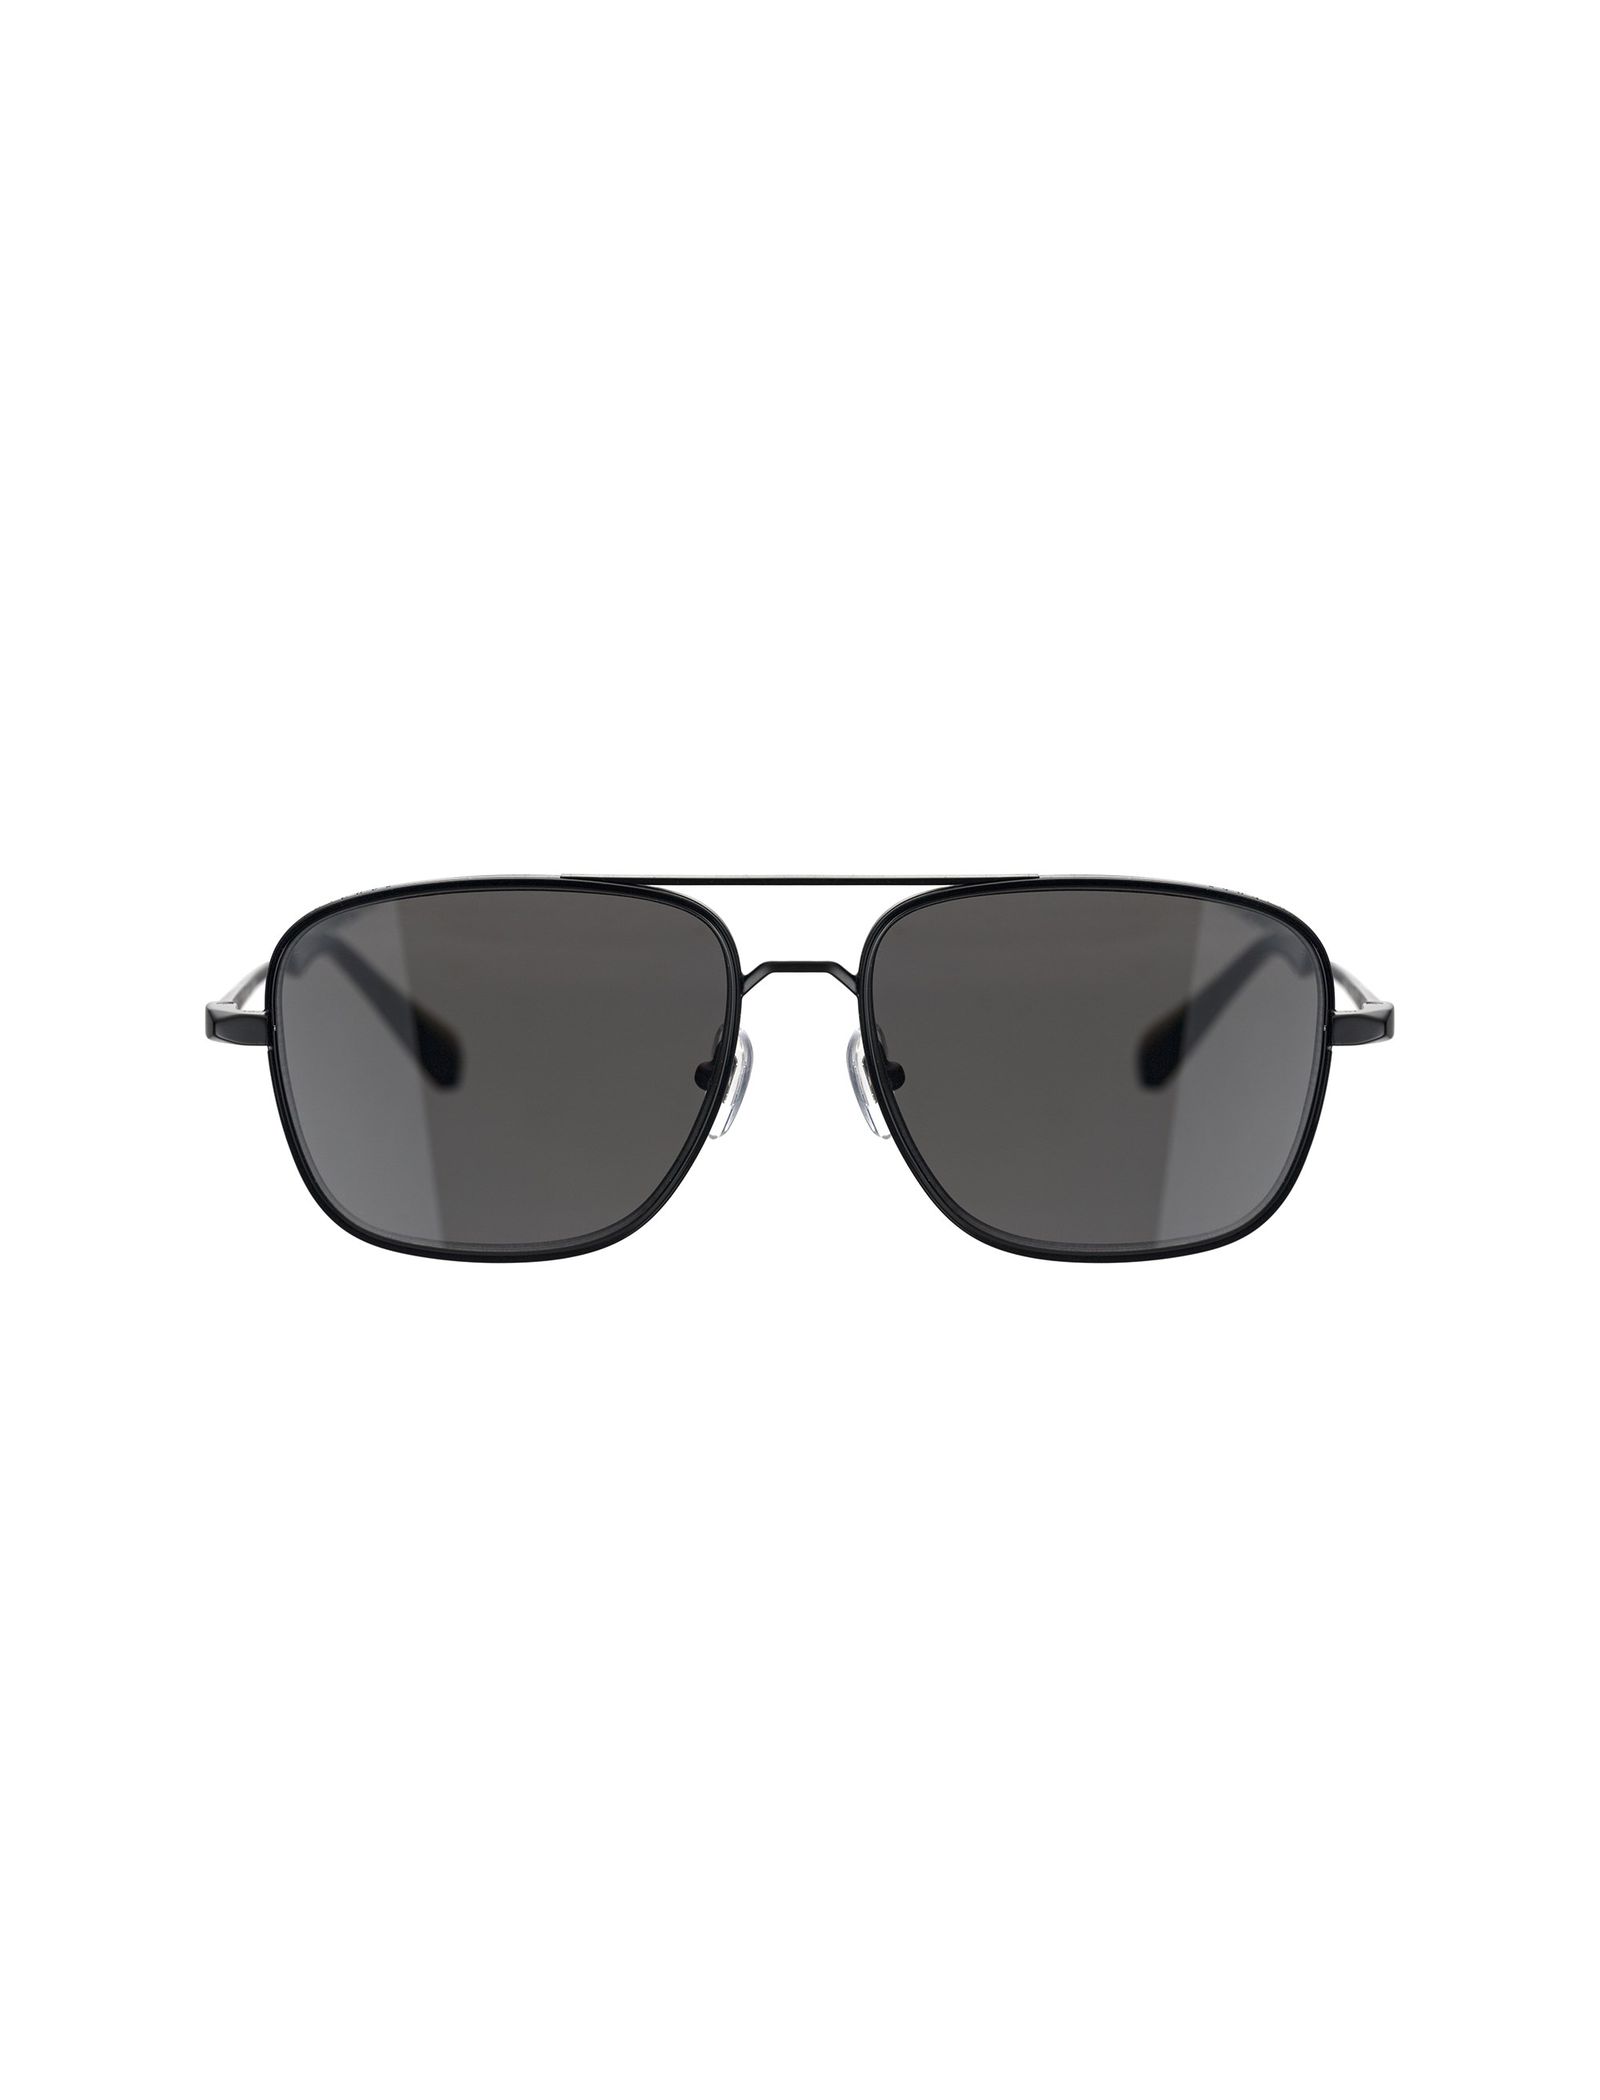 عینک آفتابی خلبانی مردانه - ساندرو - مشکي       - 1